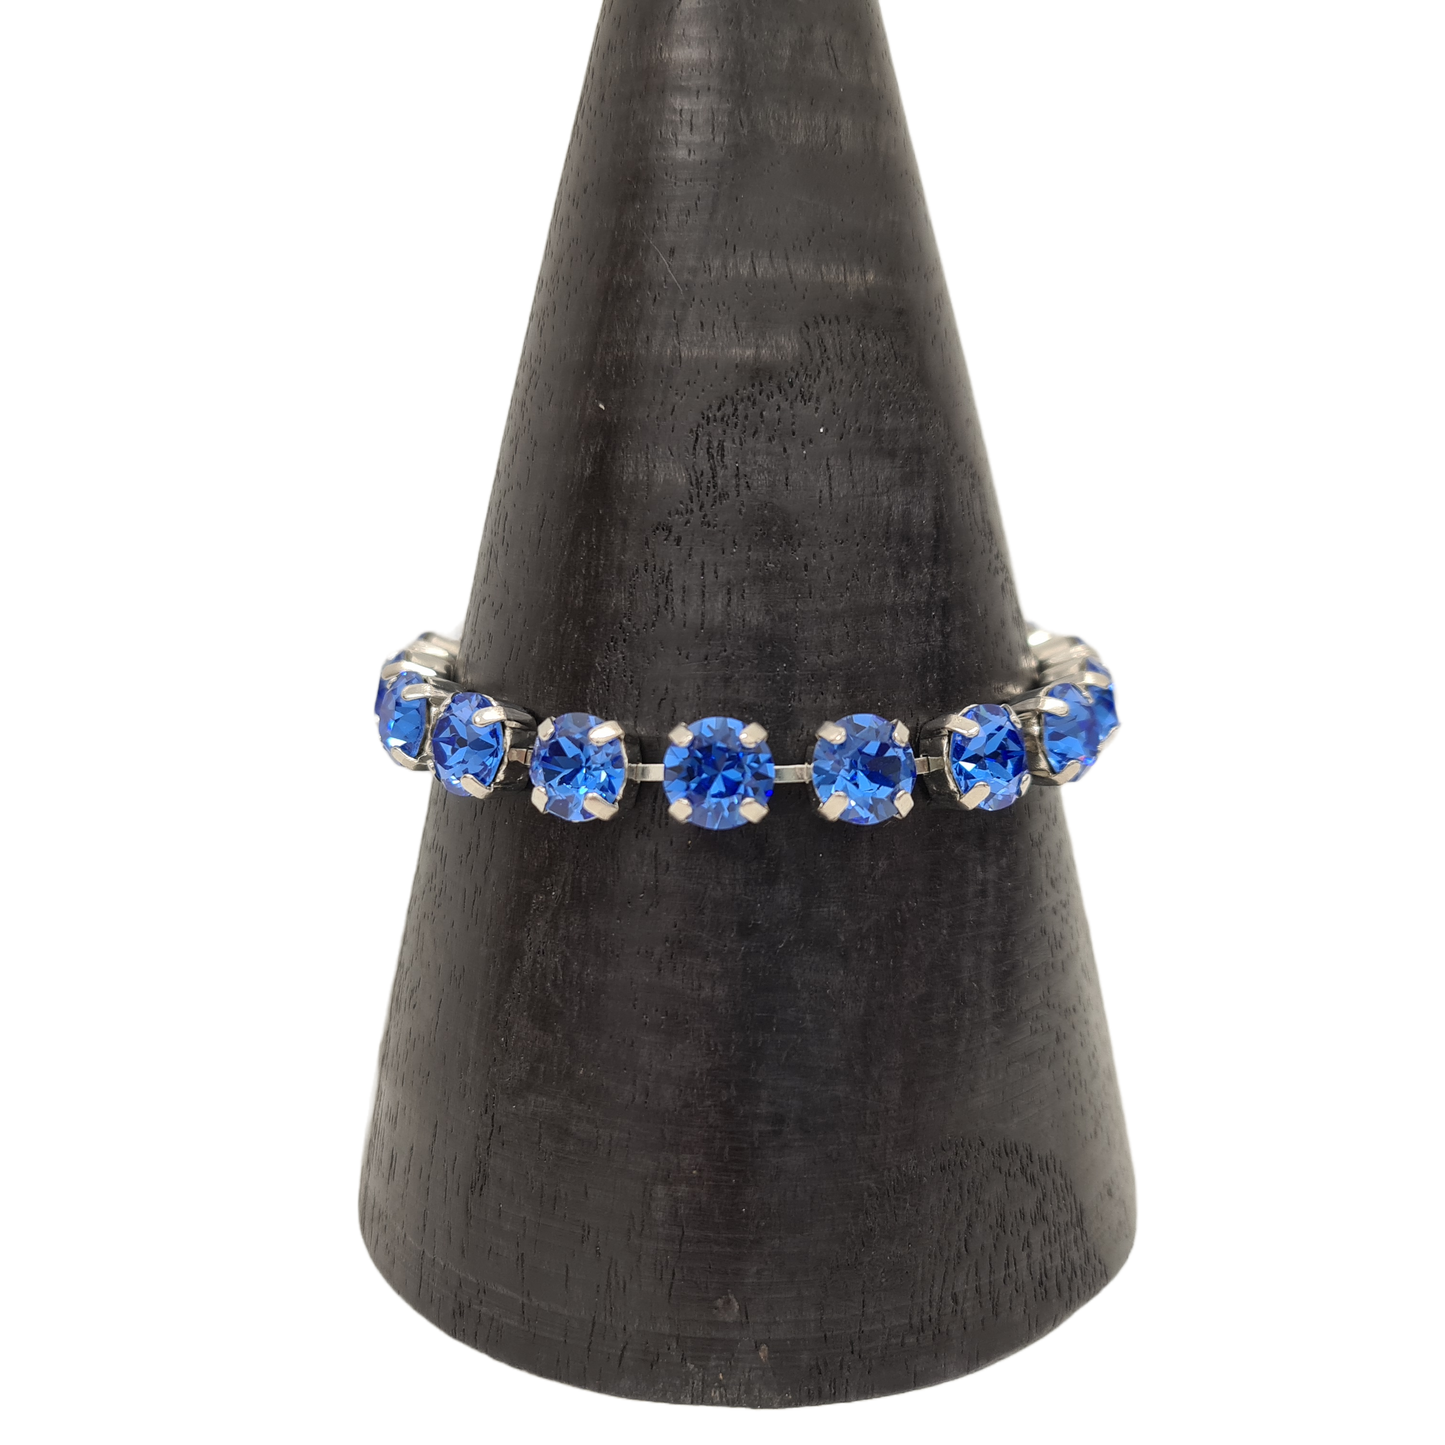 Medium Swarovski Stone Bracelet | Isa Dambeck | Avisons NZ